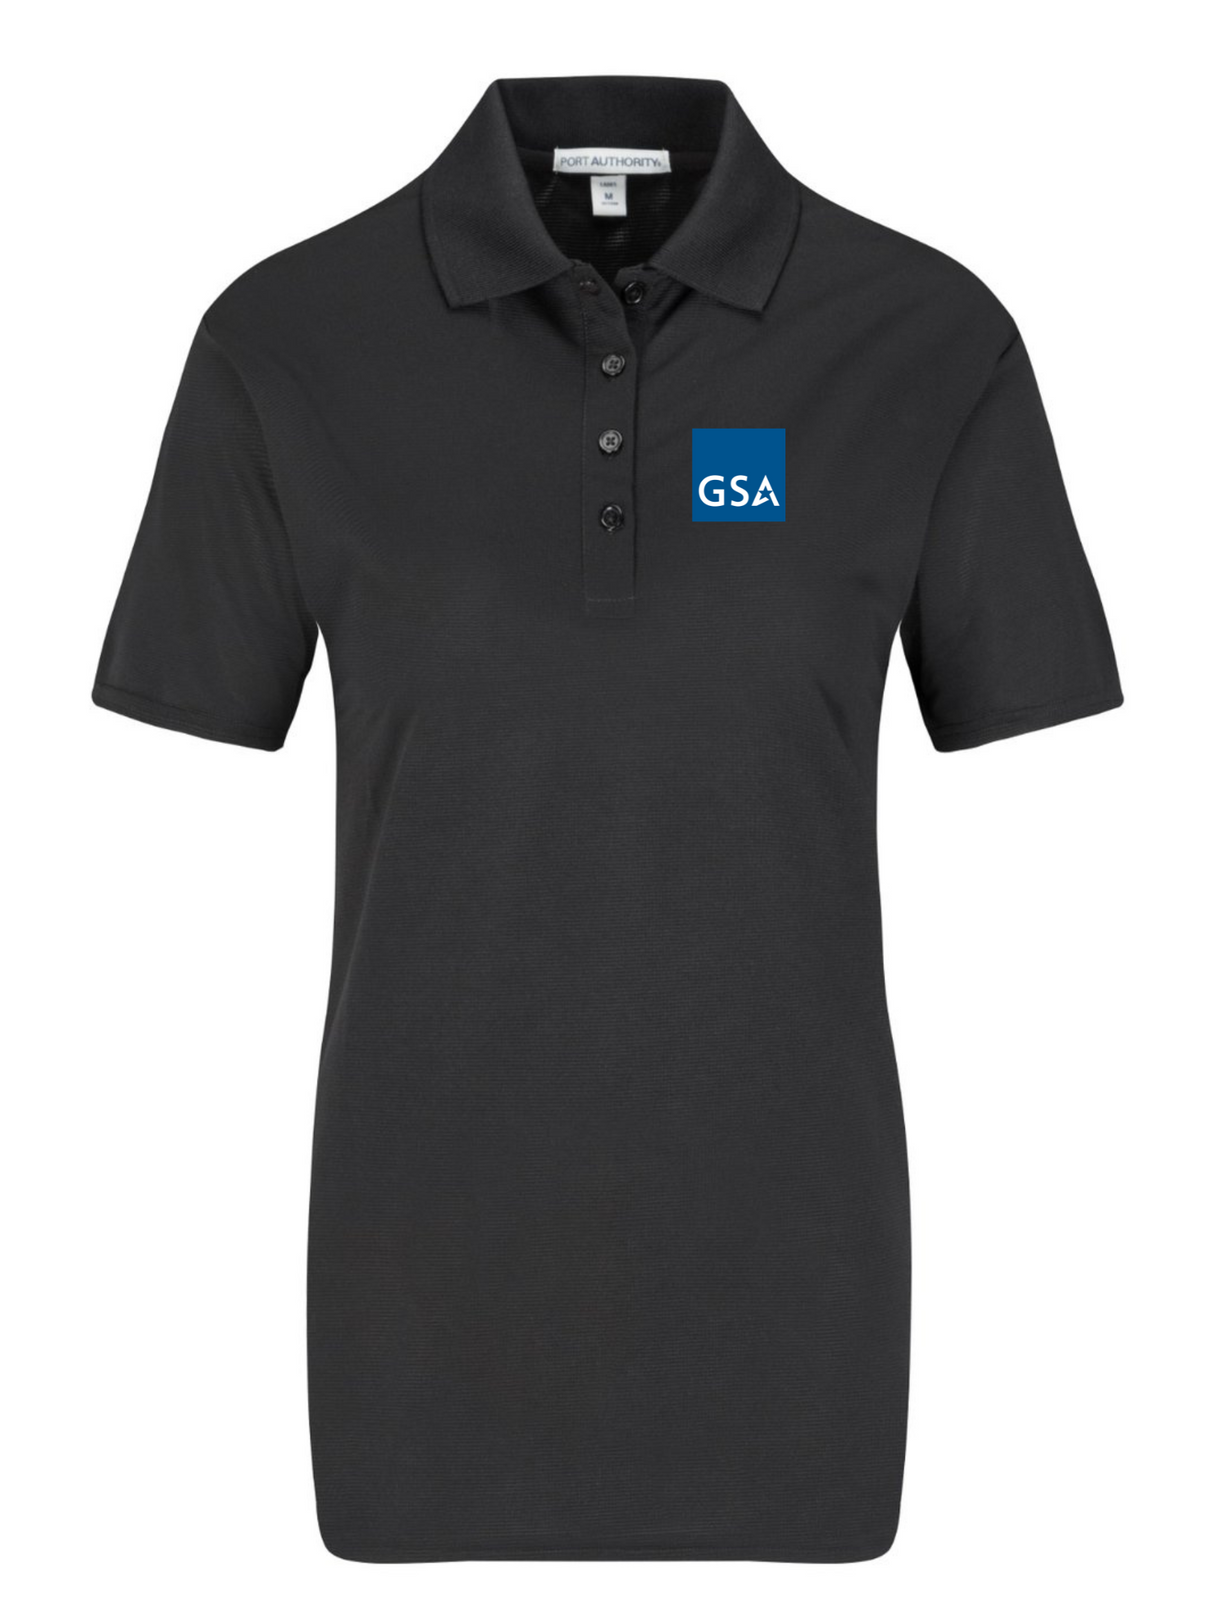 GSA Polo Shirt - Women's Short Sleeve - FEDS Apparel